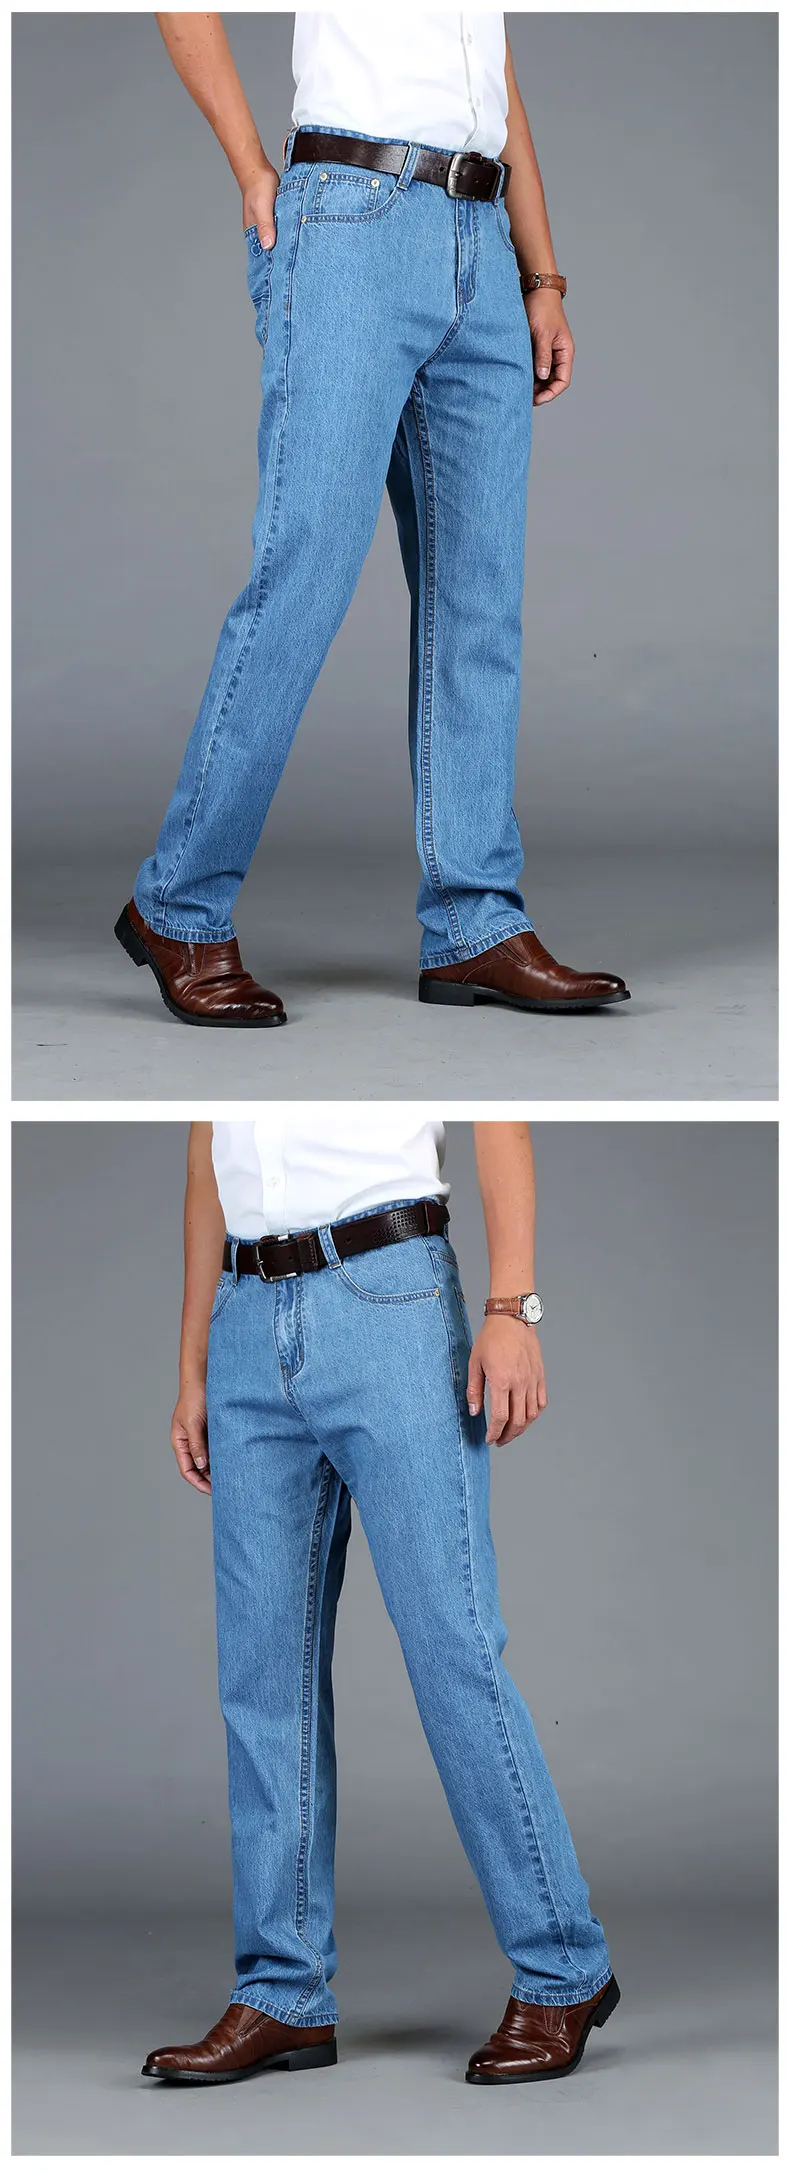 Тигр замок хлопок Летние мужские классические синие джинсы прямые длинные джинсовые брюки среднего возраста мужские качественные легкие джинсы